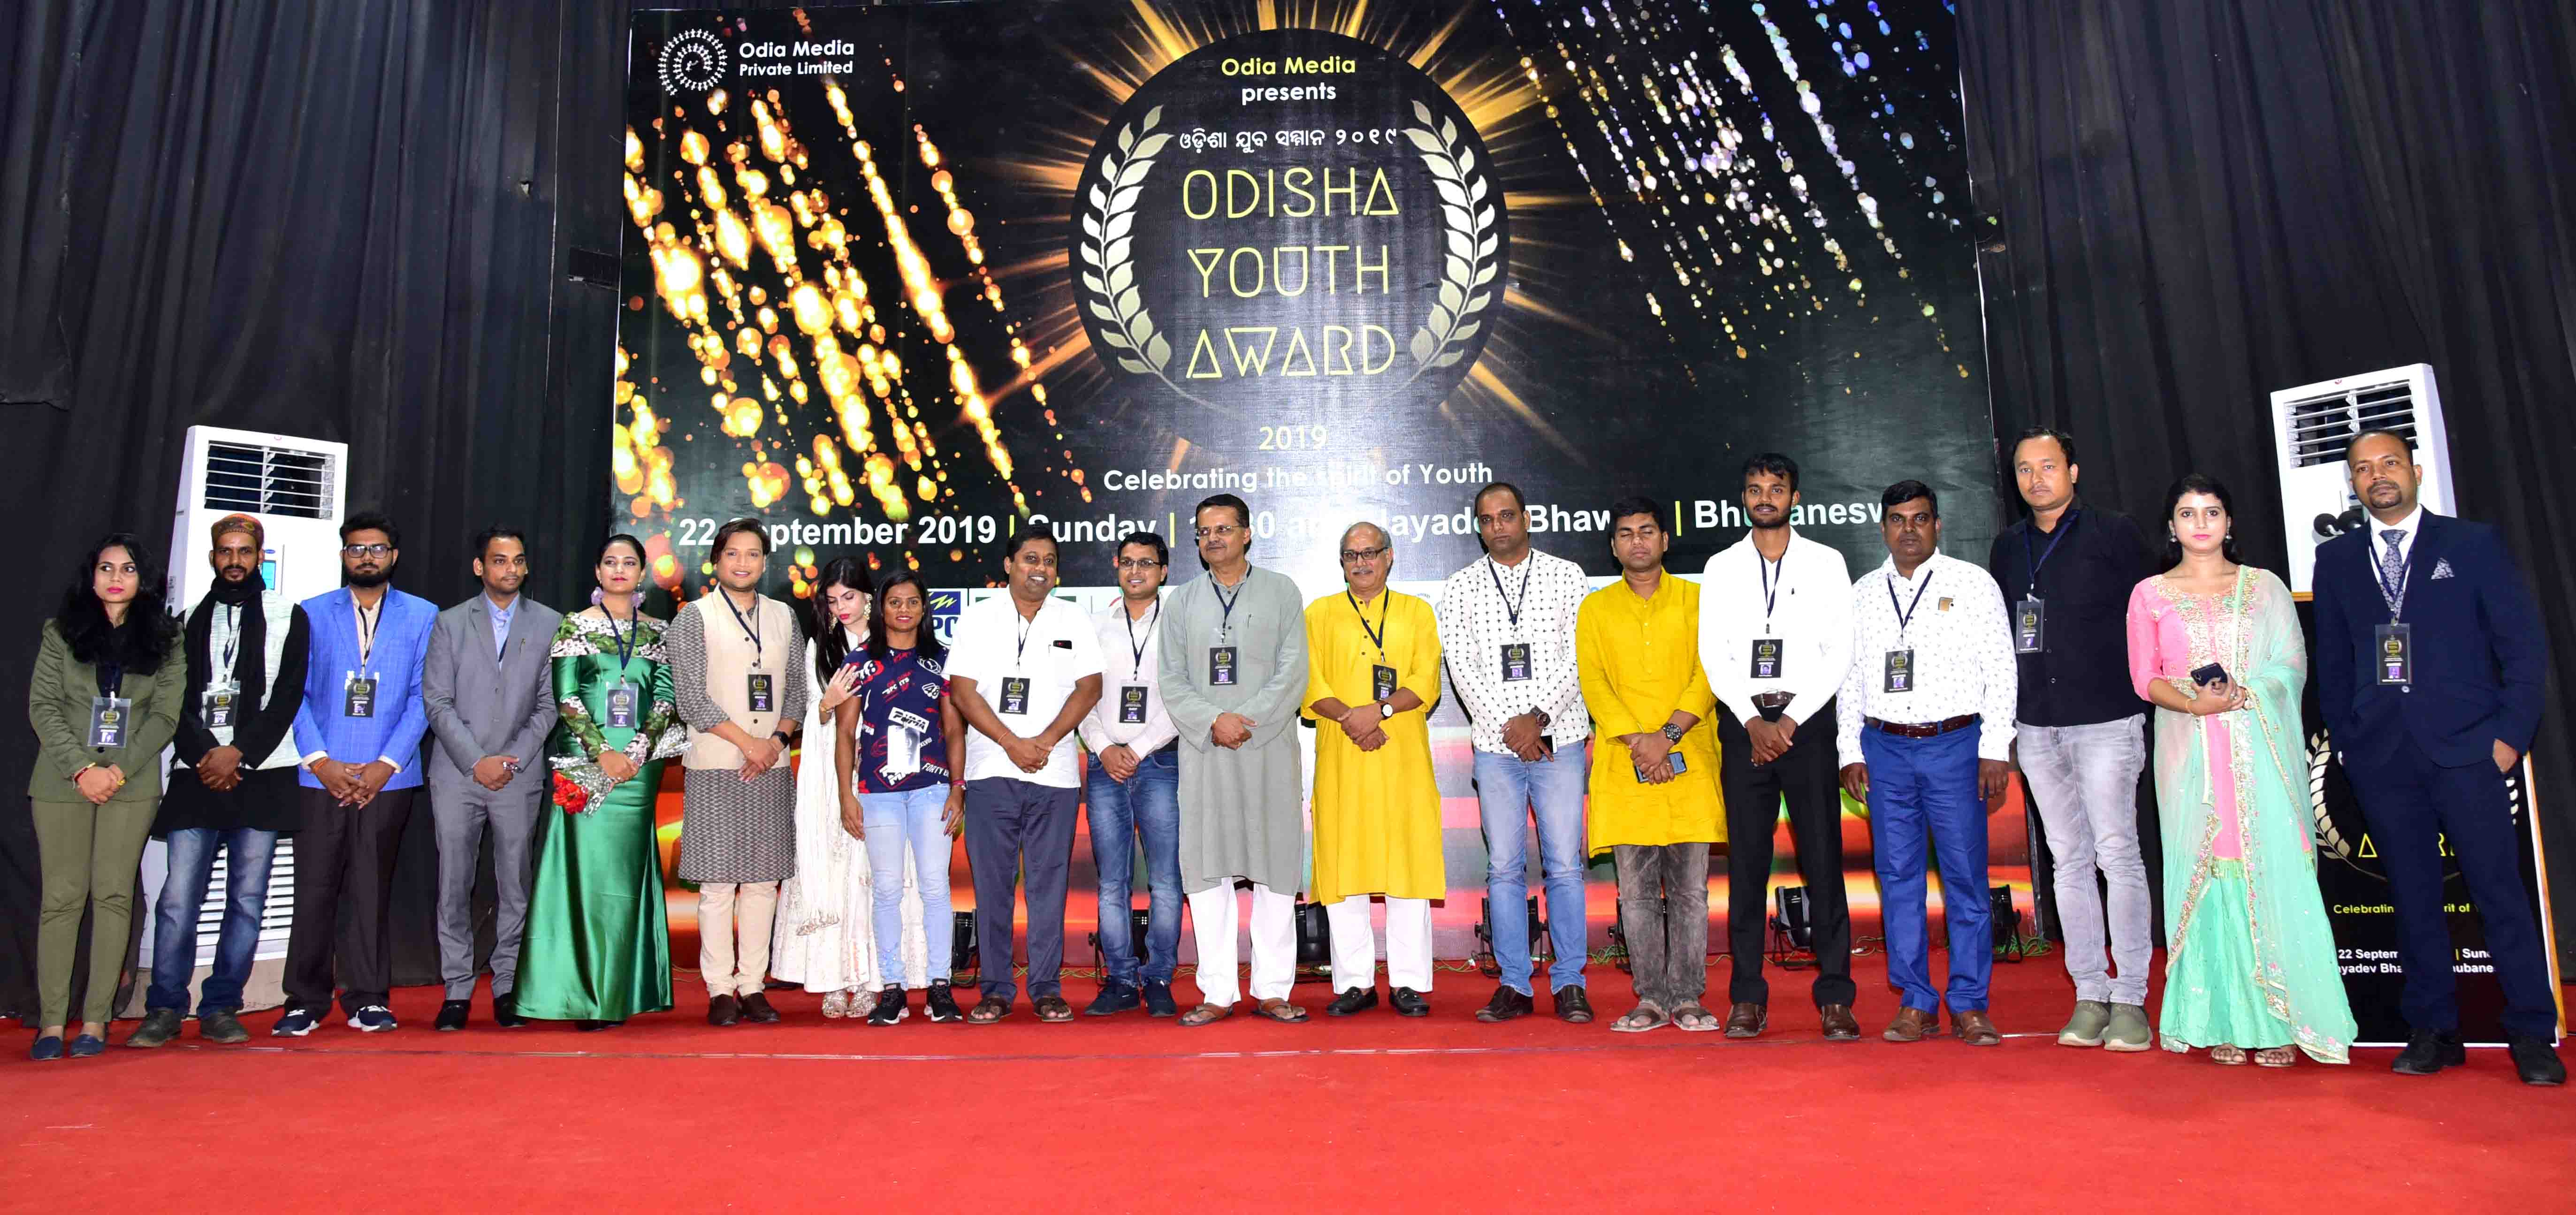 Odisha Youth Award 2019 2